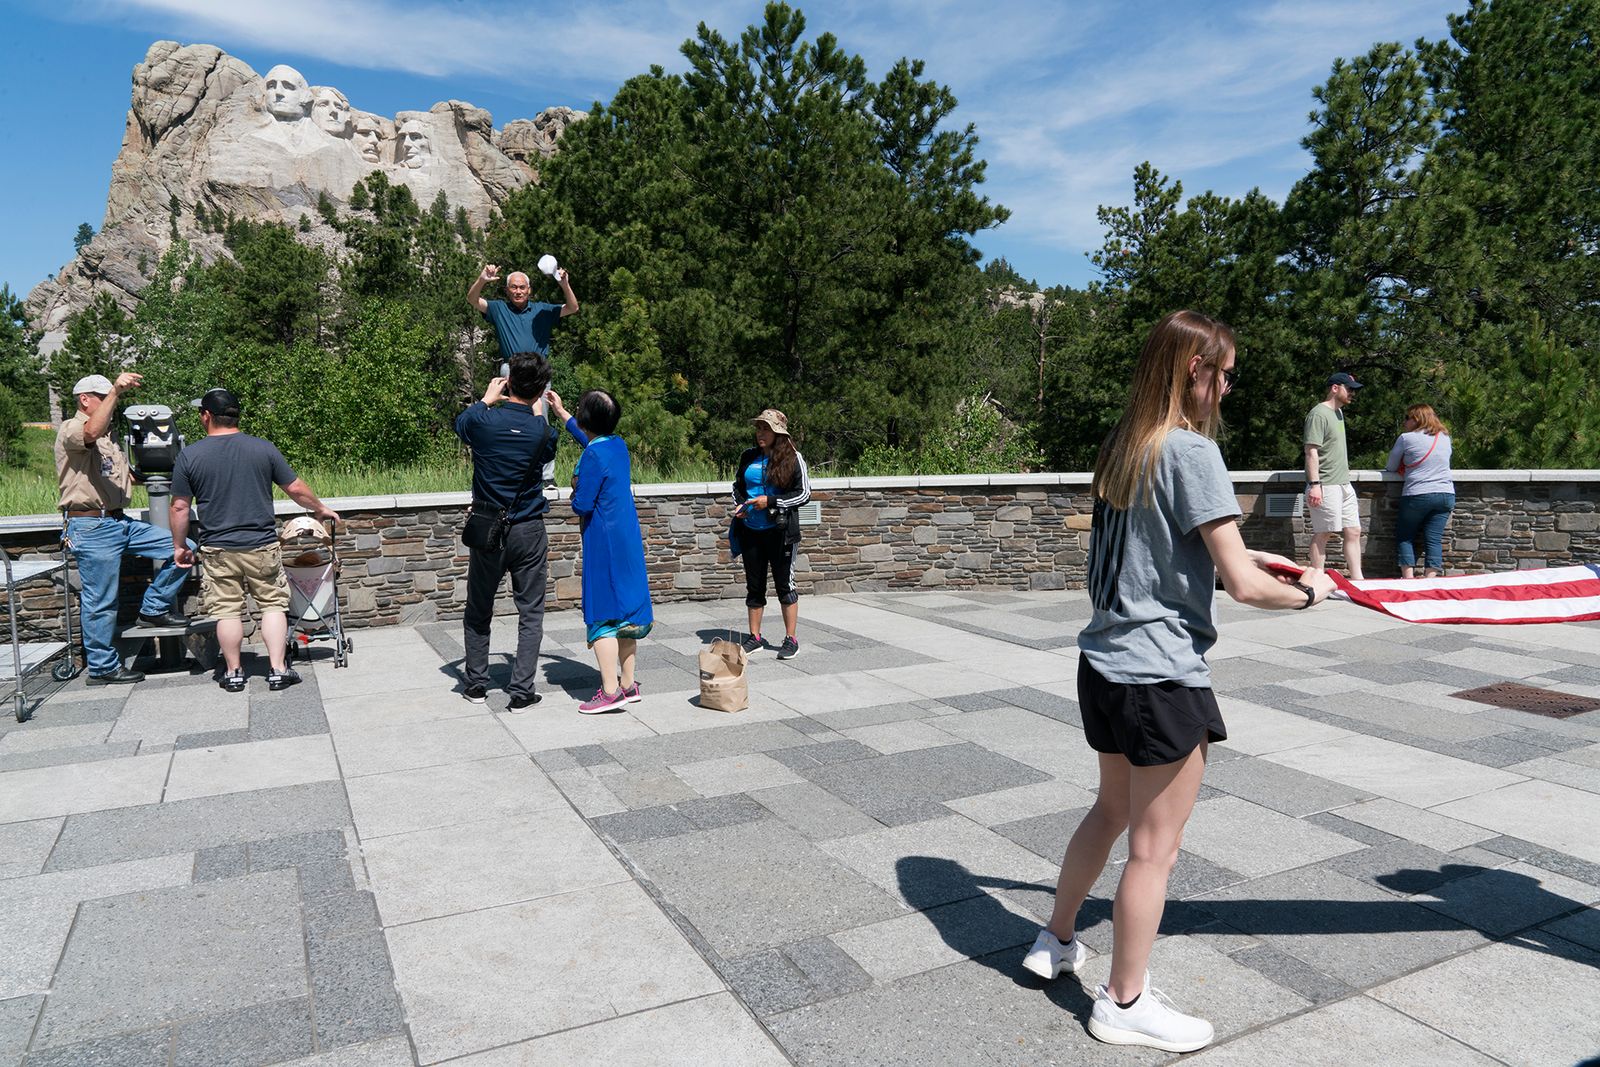 © Epiphany Knedler - Selfies at Mount Rushmore